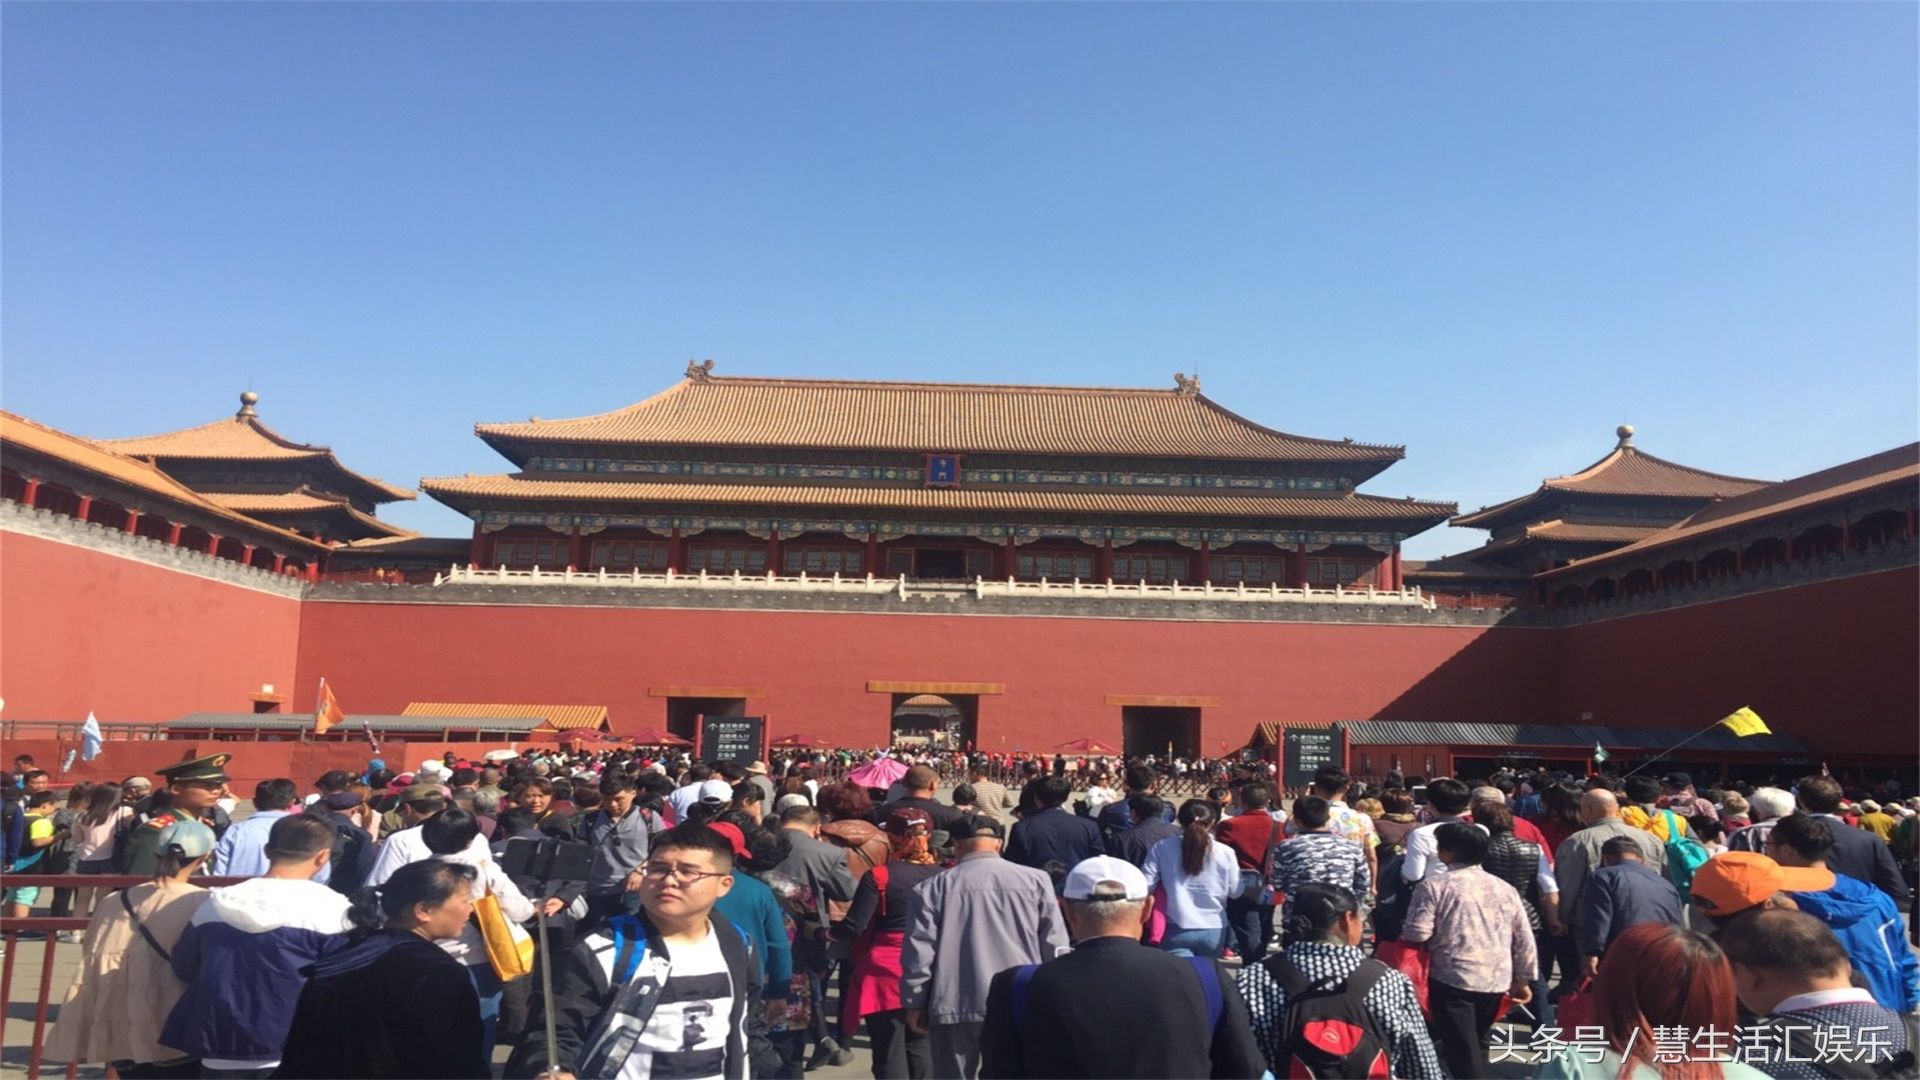 最出名的旅游景点之一北京故宫,感受古代皇帝